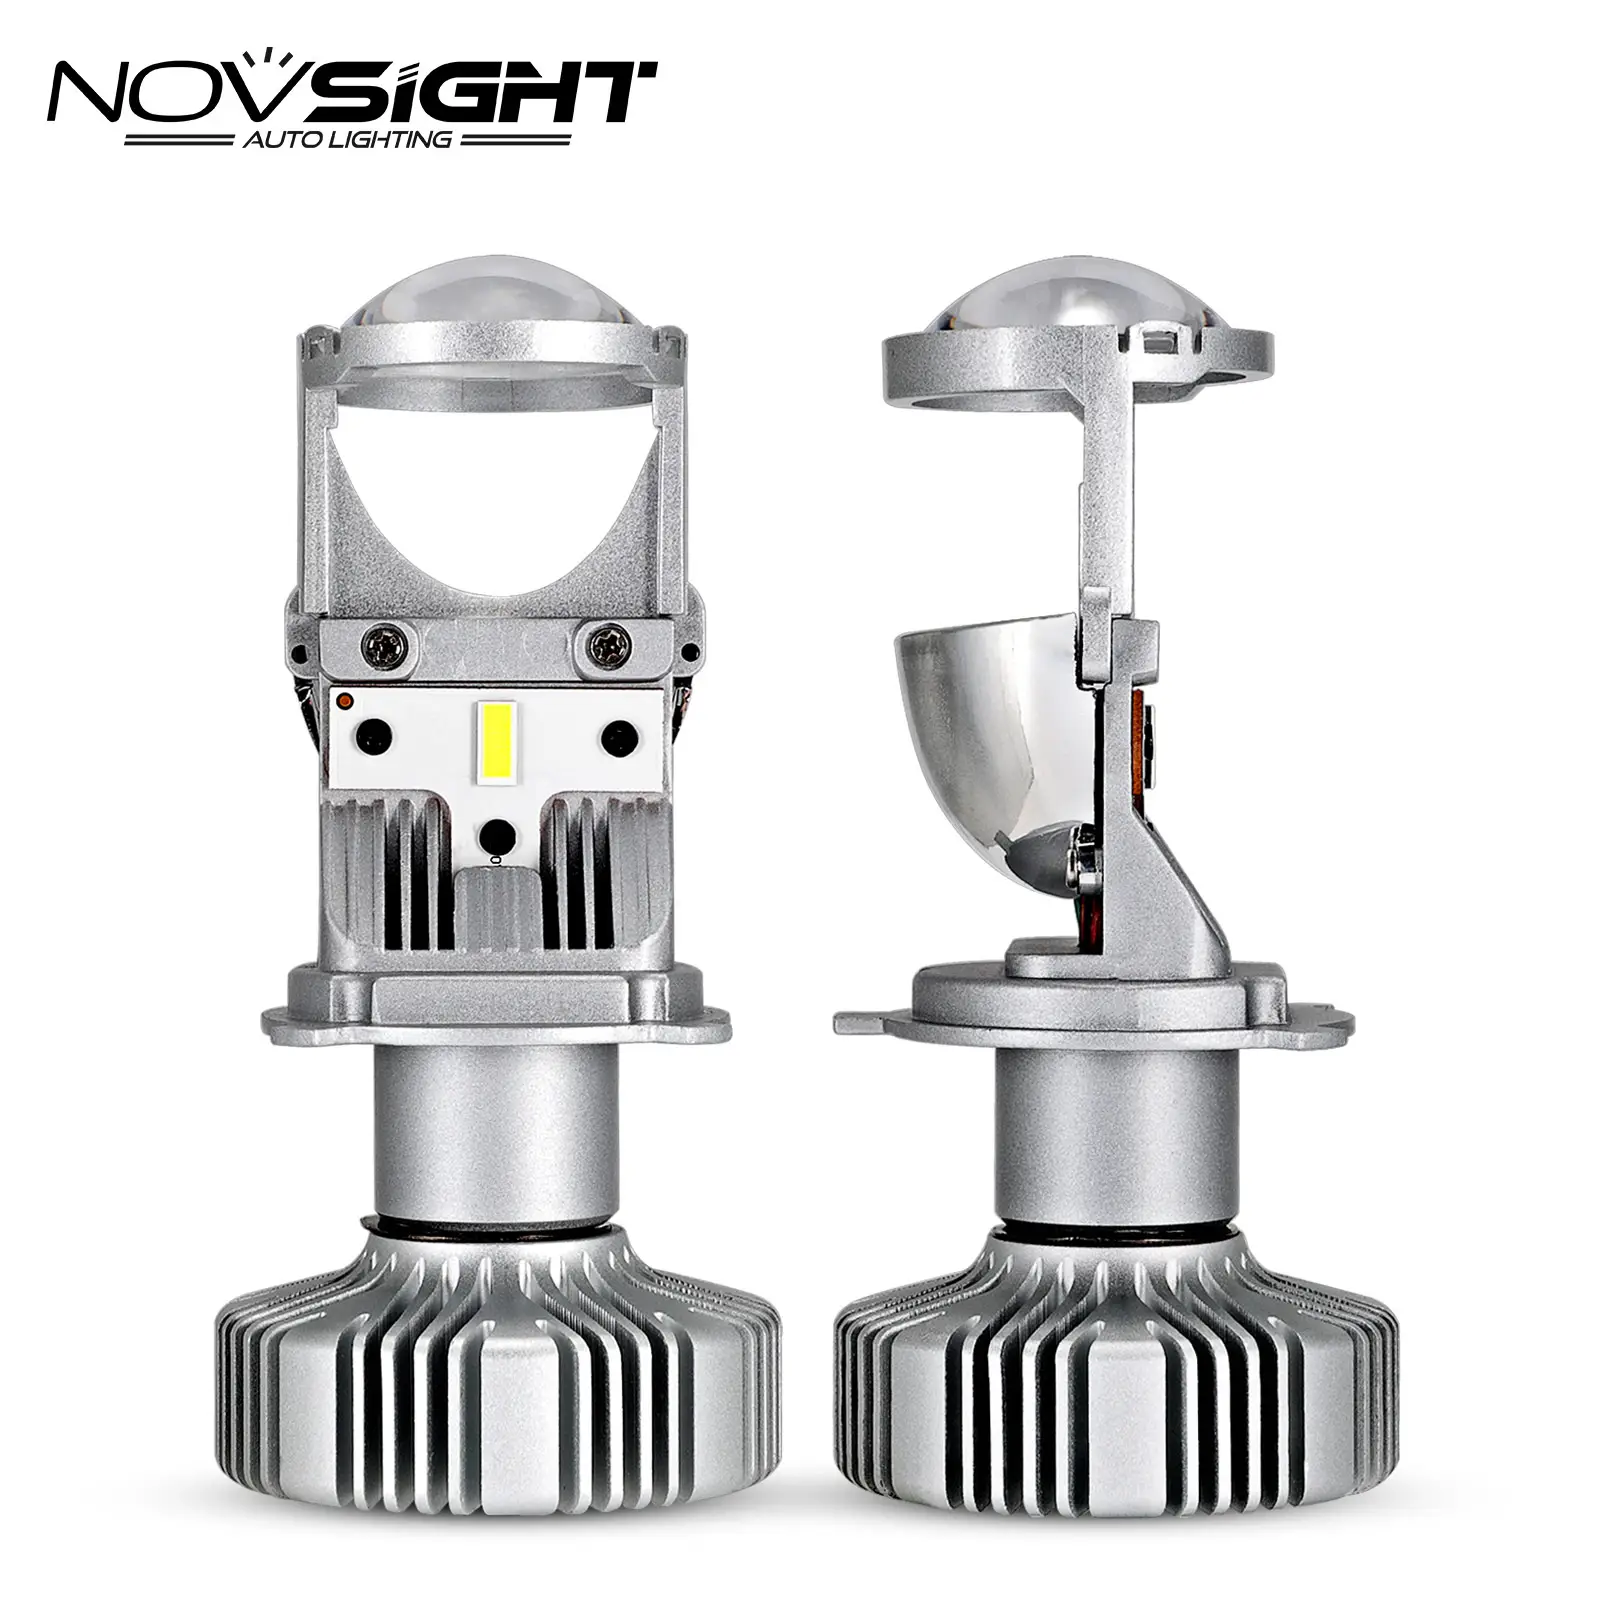 Novsight Lampu Depan Led Nighteye, H4 H7 90W Lensa/Desain Proyektor Ganti HID Sistem Pencahayaan Otomatis Kit Led H7 D2s